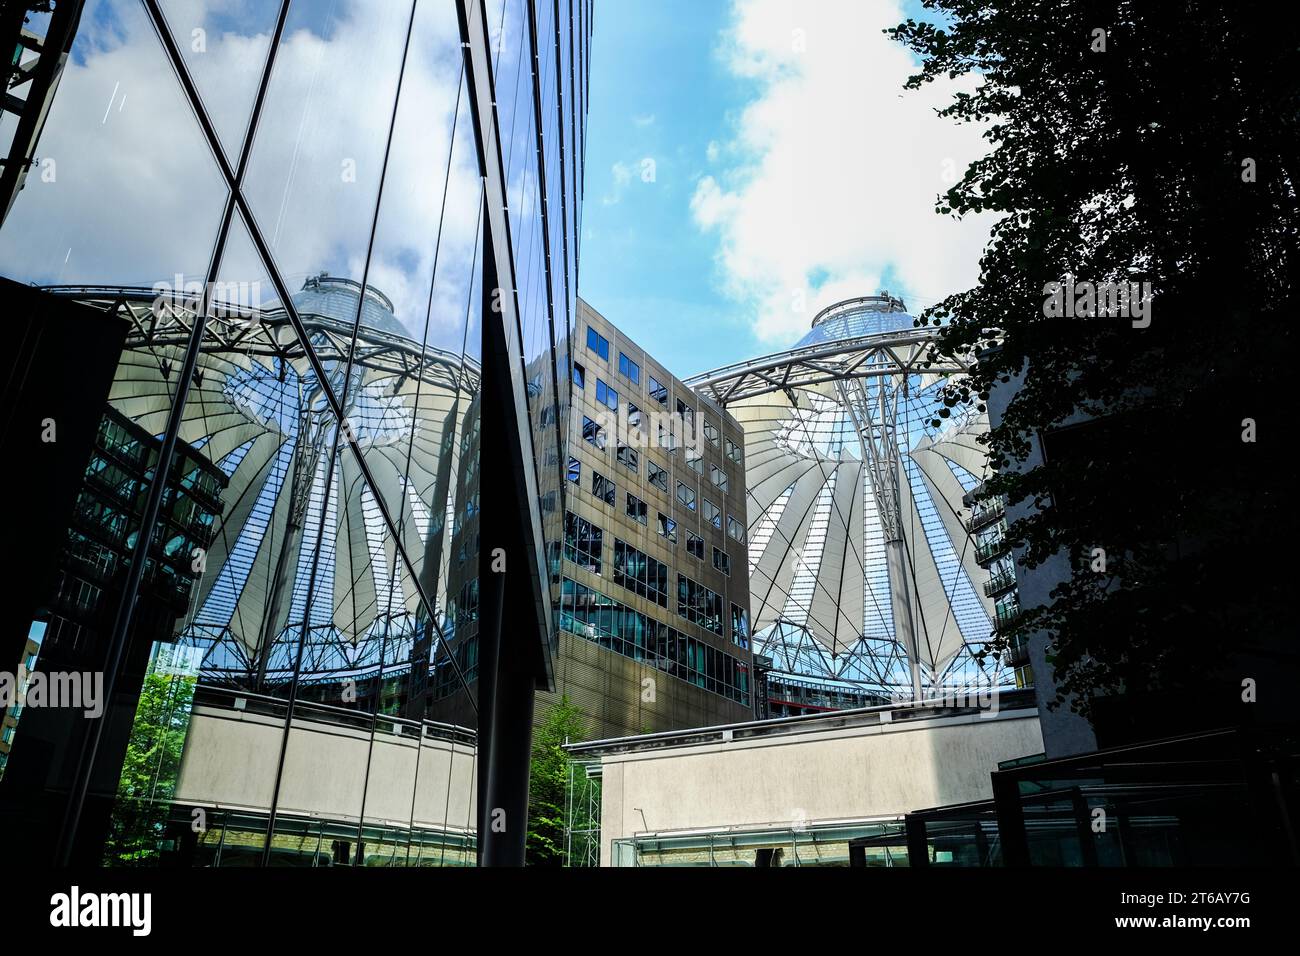 Die moderne Architektur des Sony Centre am Potsdamer Platz verkörpert Berlins zeitgenössischen Charme. Stockfoto